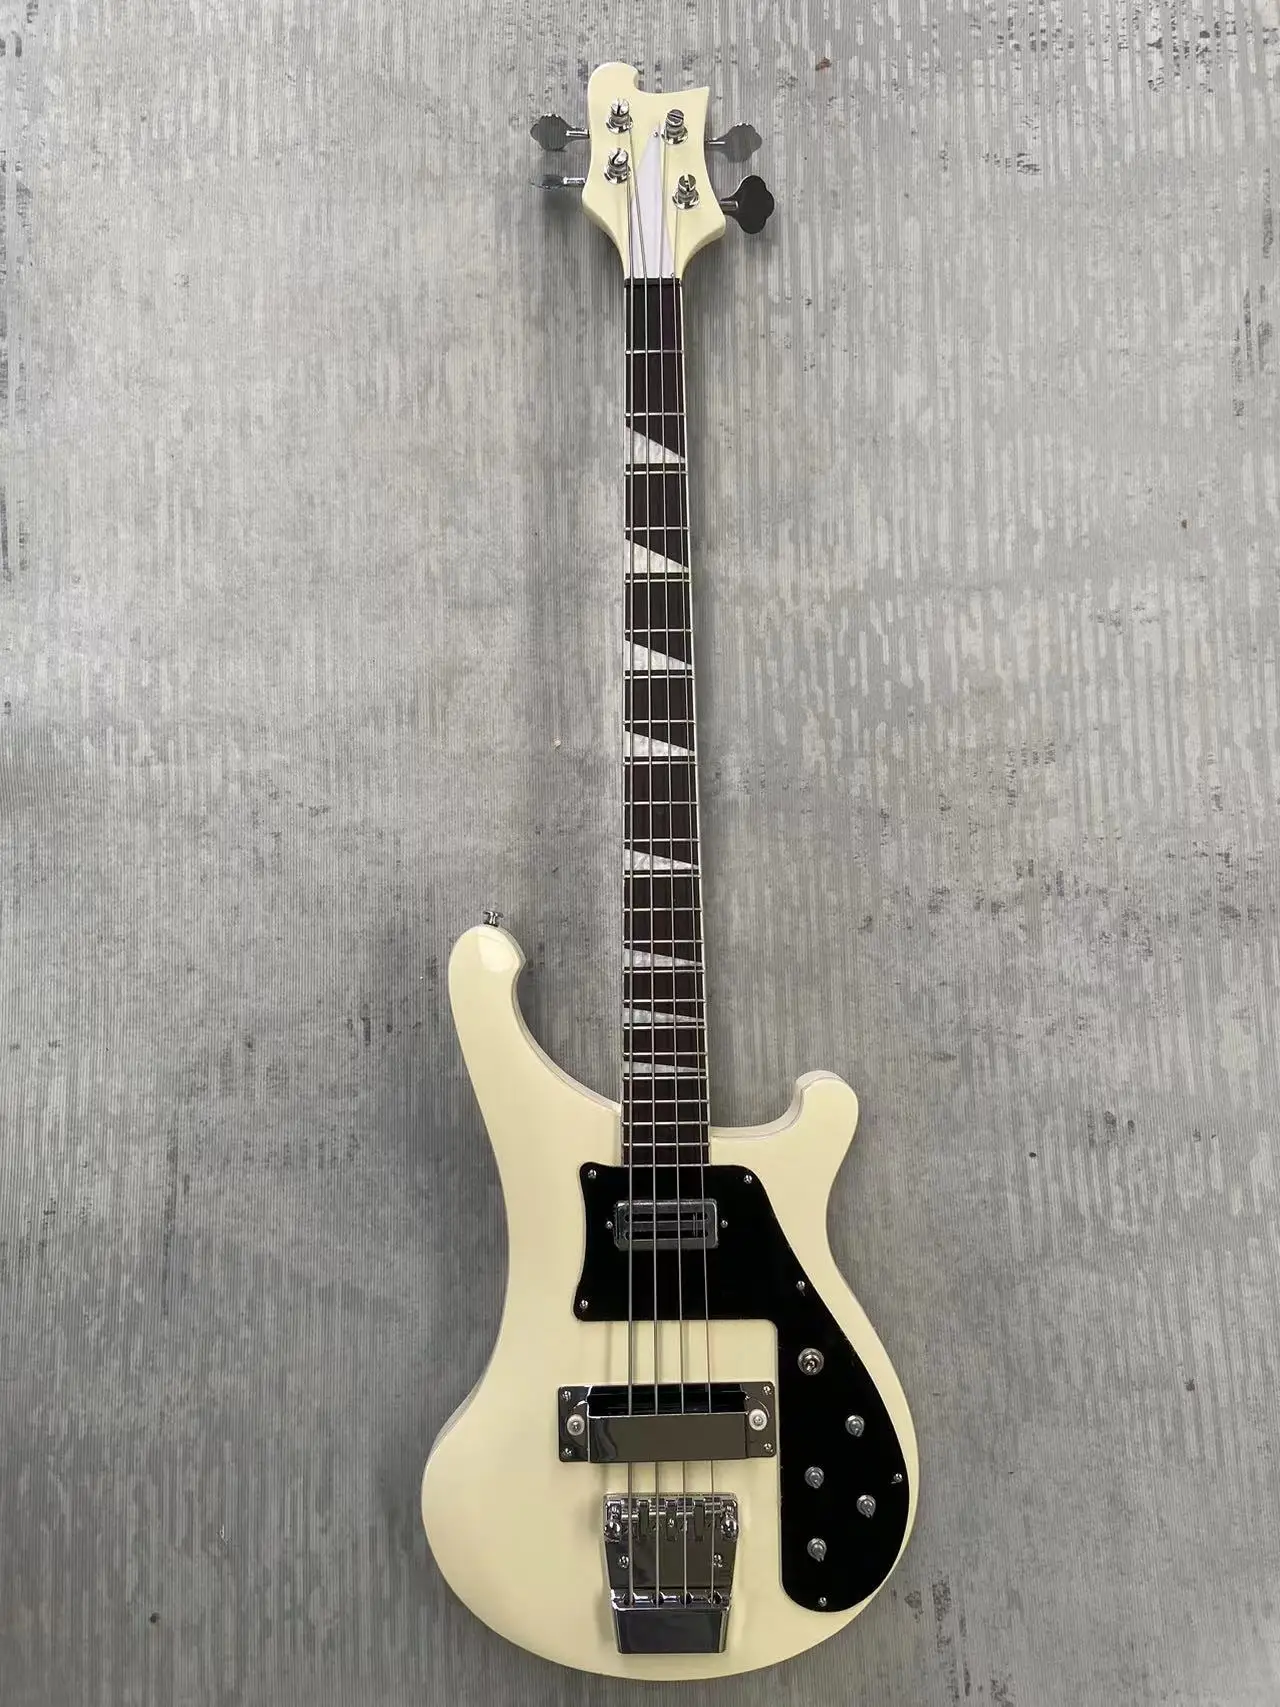 

1 Rickenbacker 4003 бас ЭЛЕКТРИЧЕСКАЯ ГИТАРА белого цвета хромированная фурнитура Высококачественная гитара бесплатная доставка